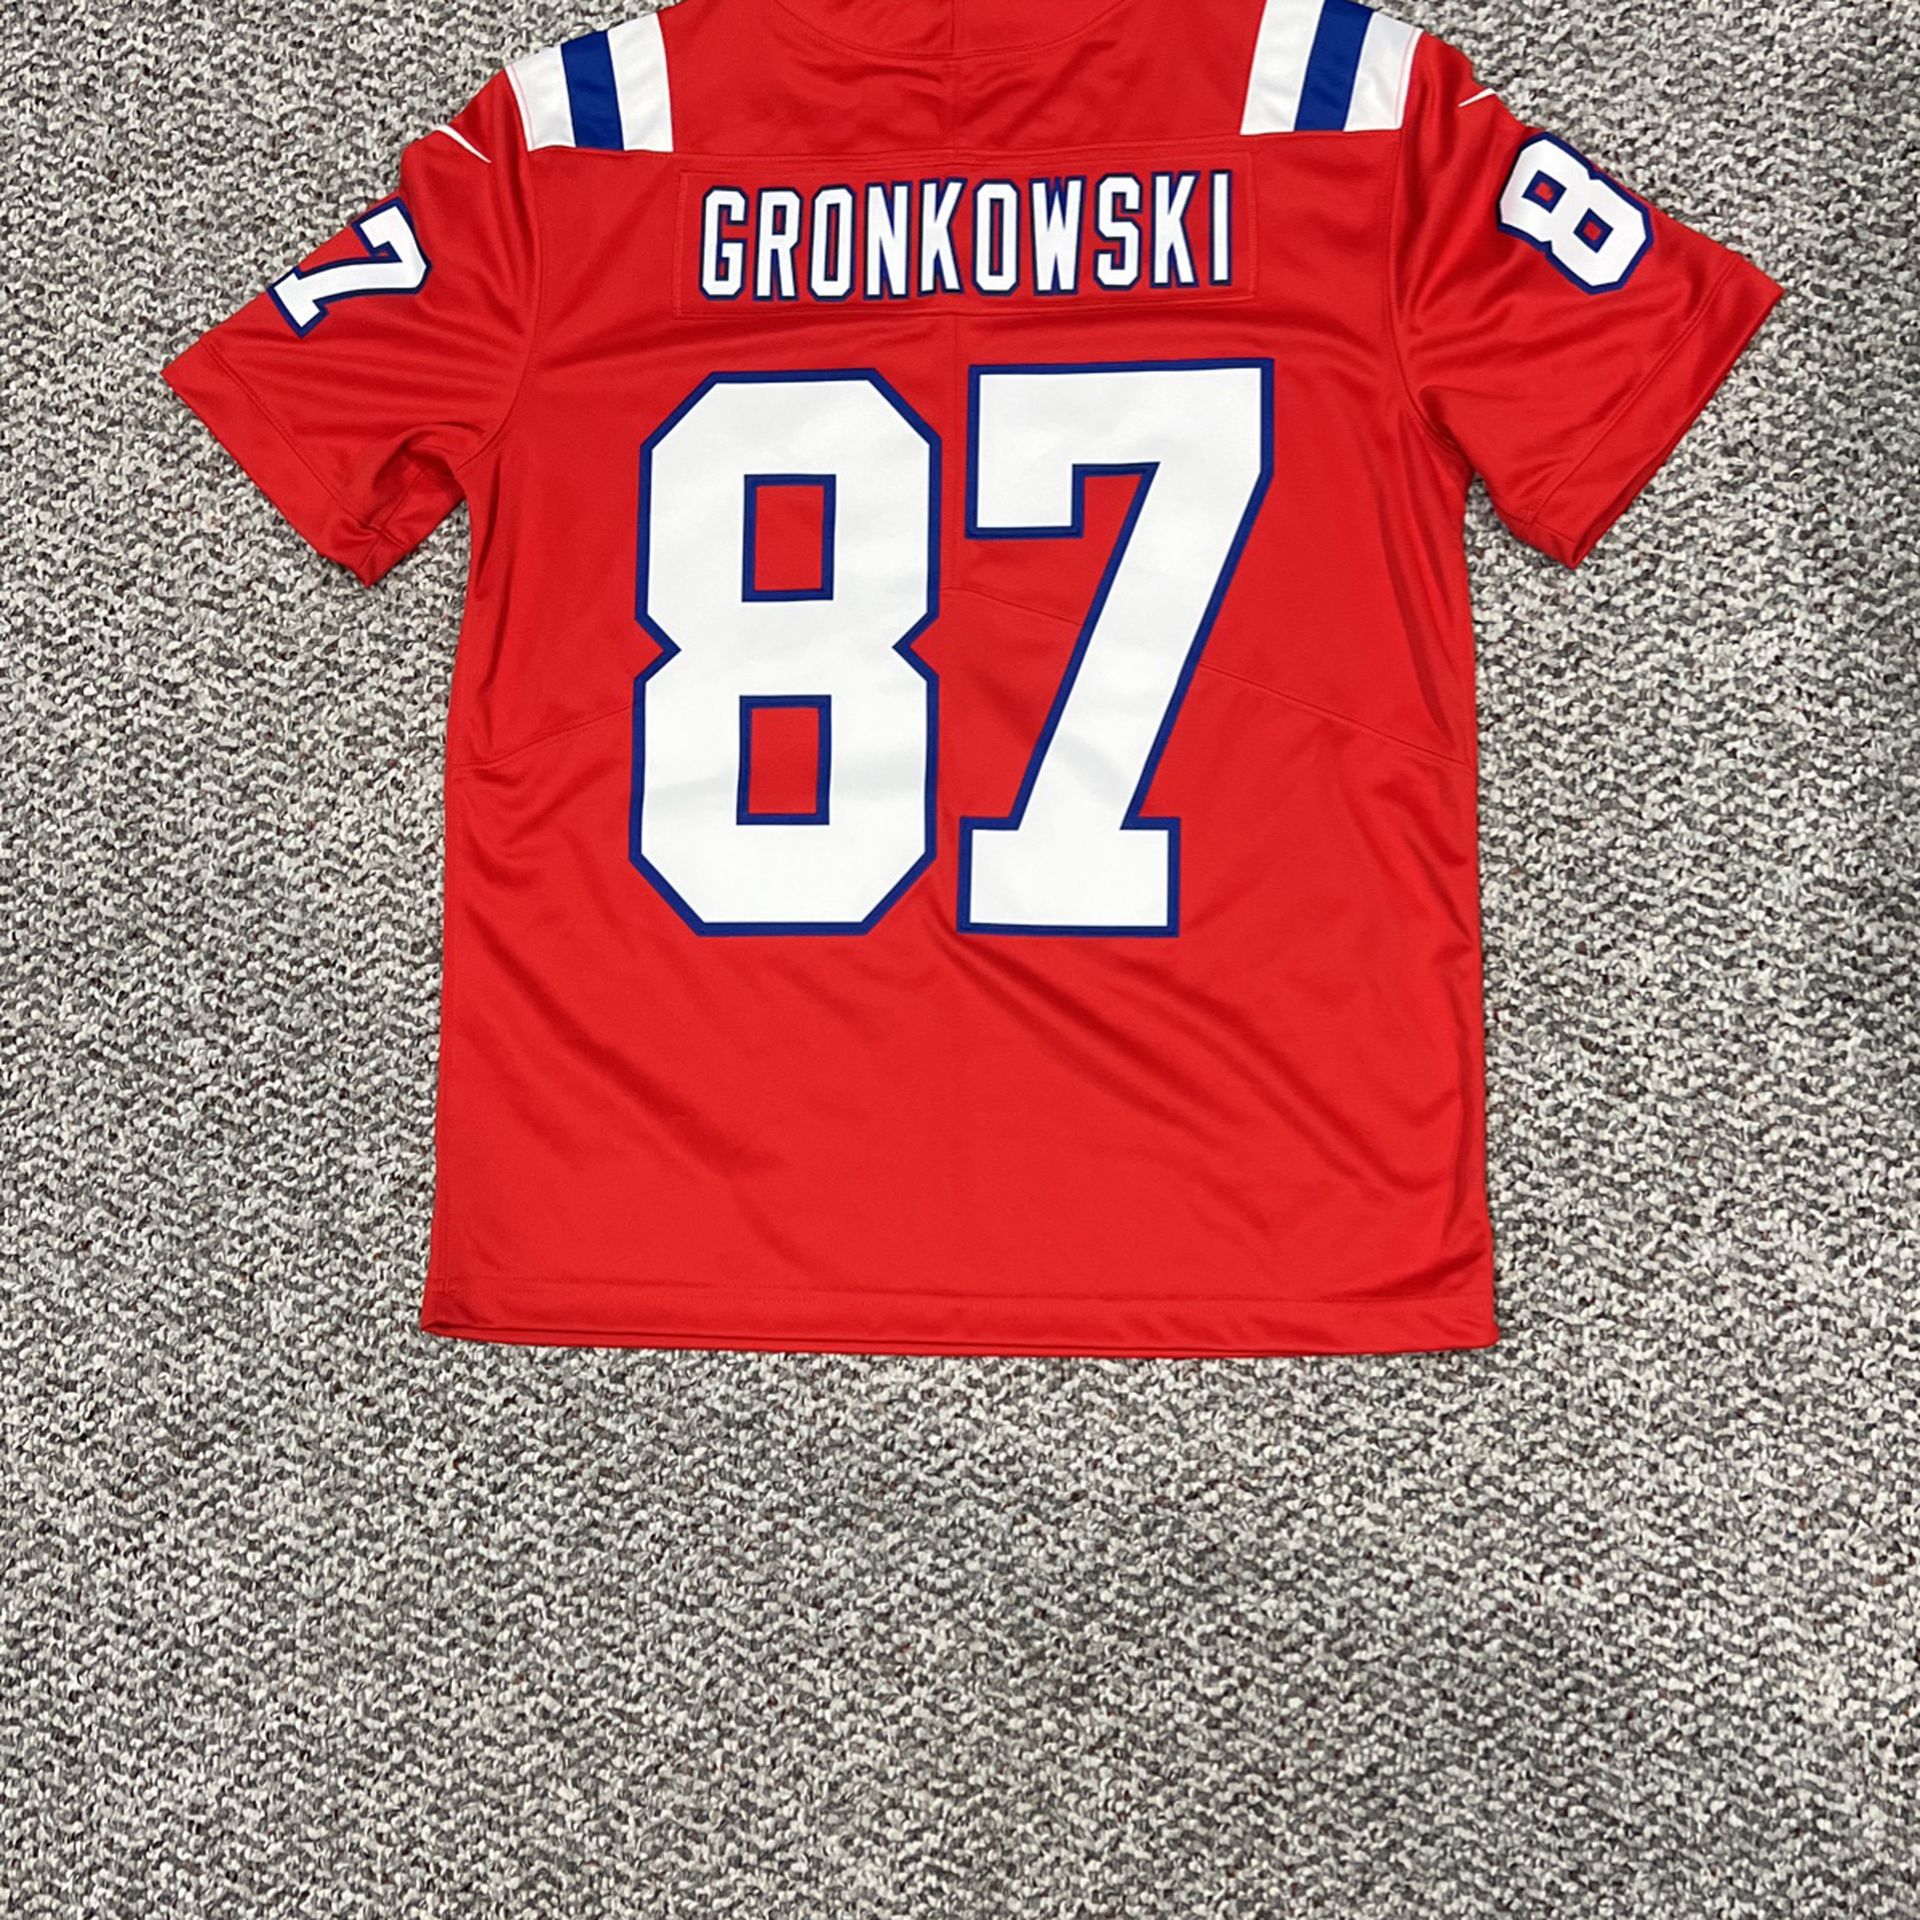 Gronkowskl Stitched Jersey Nike Dri-Fit Size M